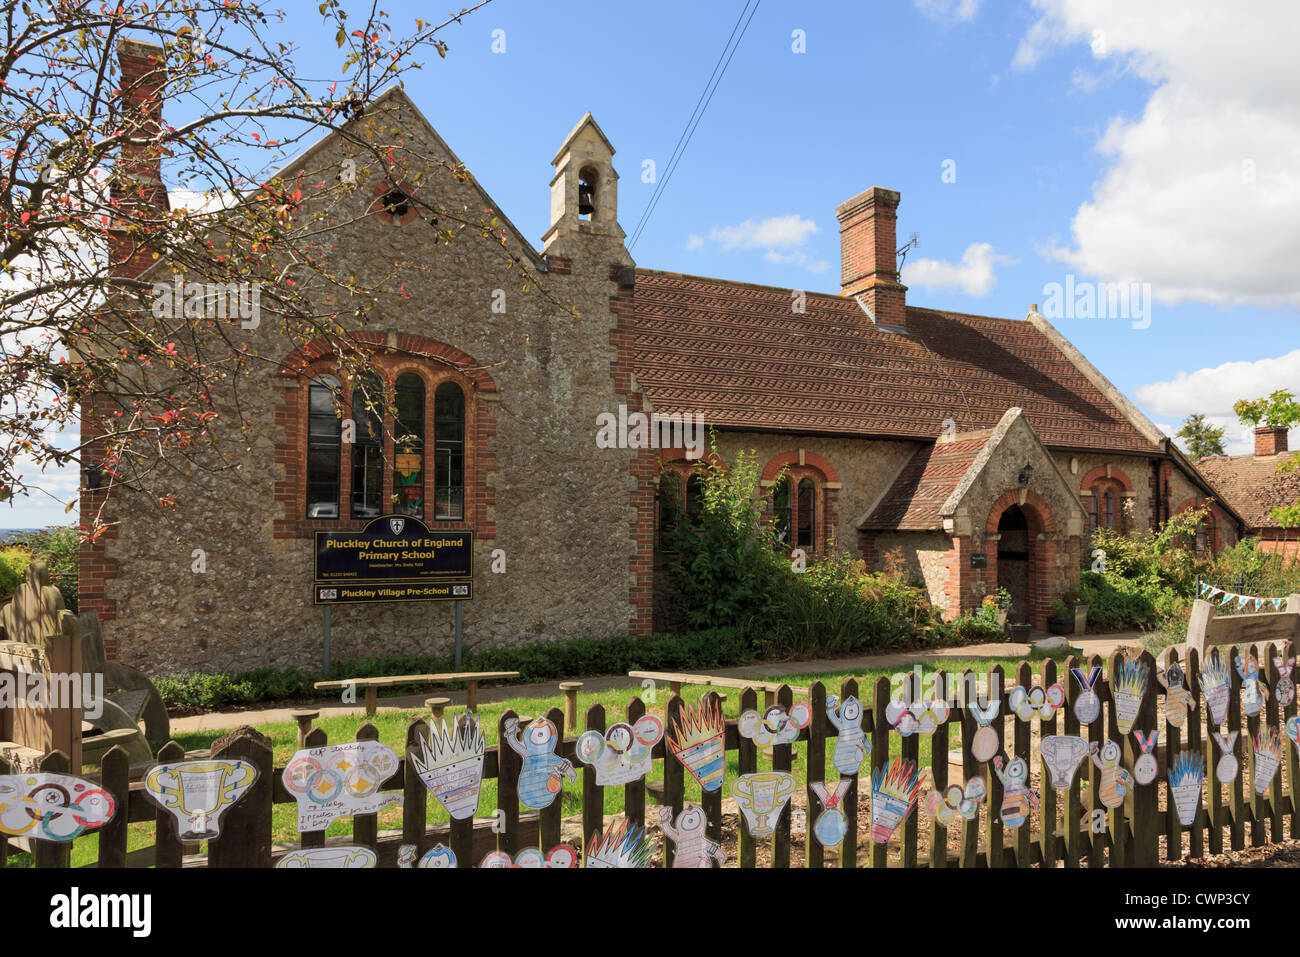 Village traditionnel Église d'Angleterre bâtiment de l'école primaire décoré avec des dessins des Jeux Olympiques 2012. Pluckley Kent Angleterre Royaume-Uni Banque D'Images